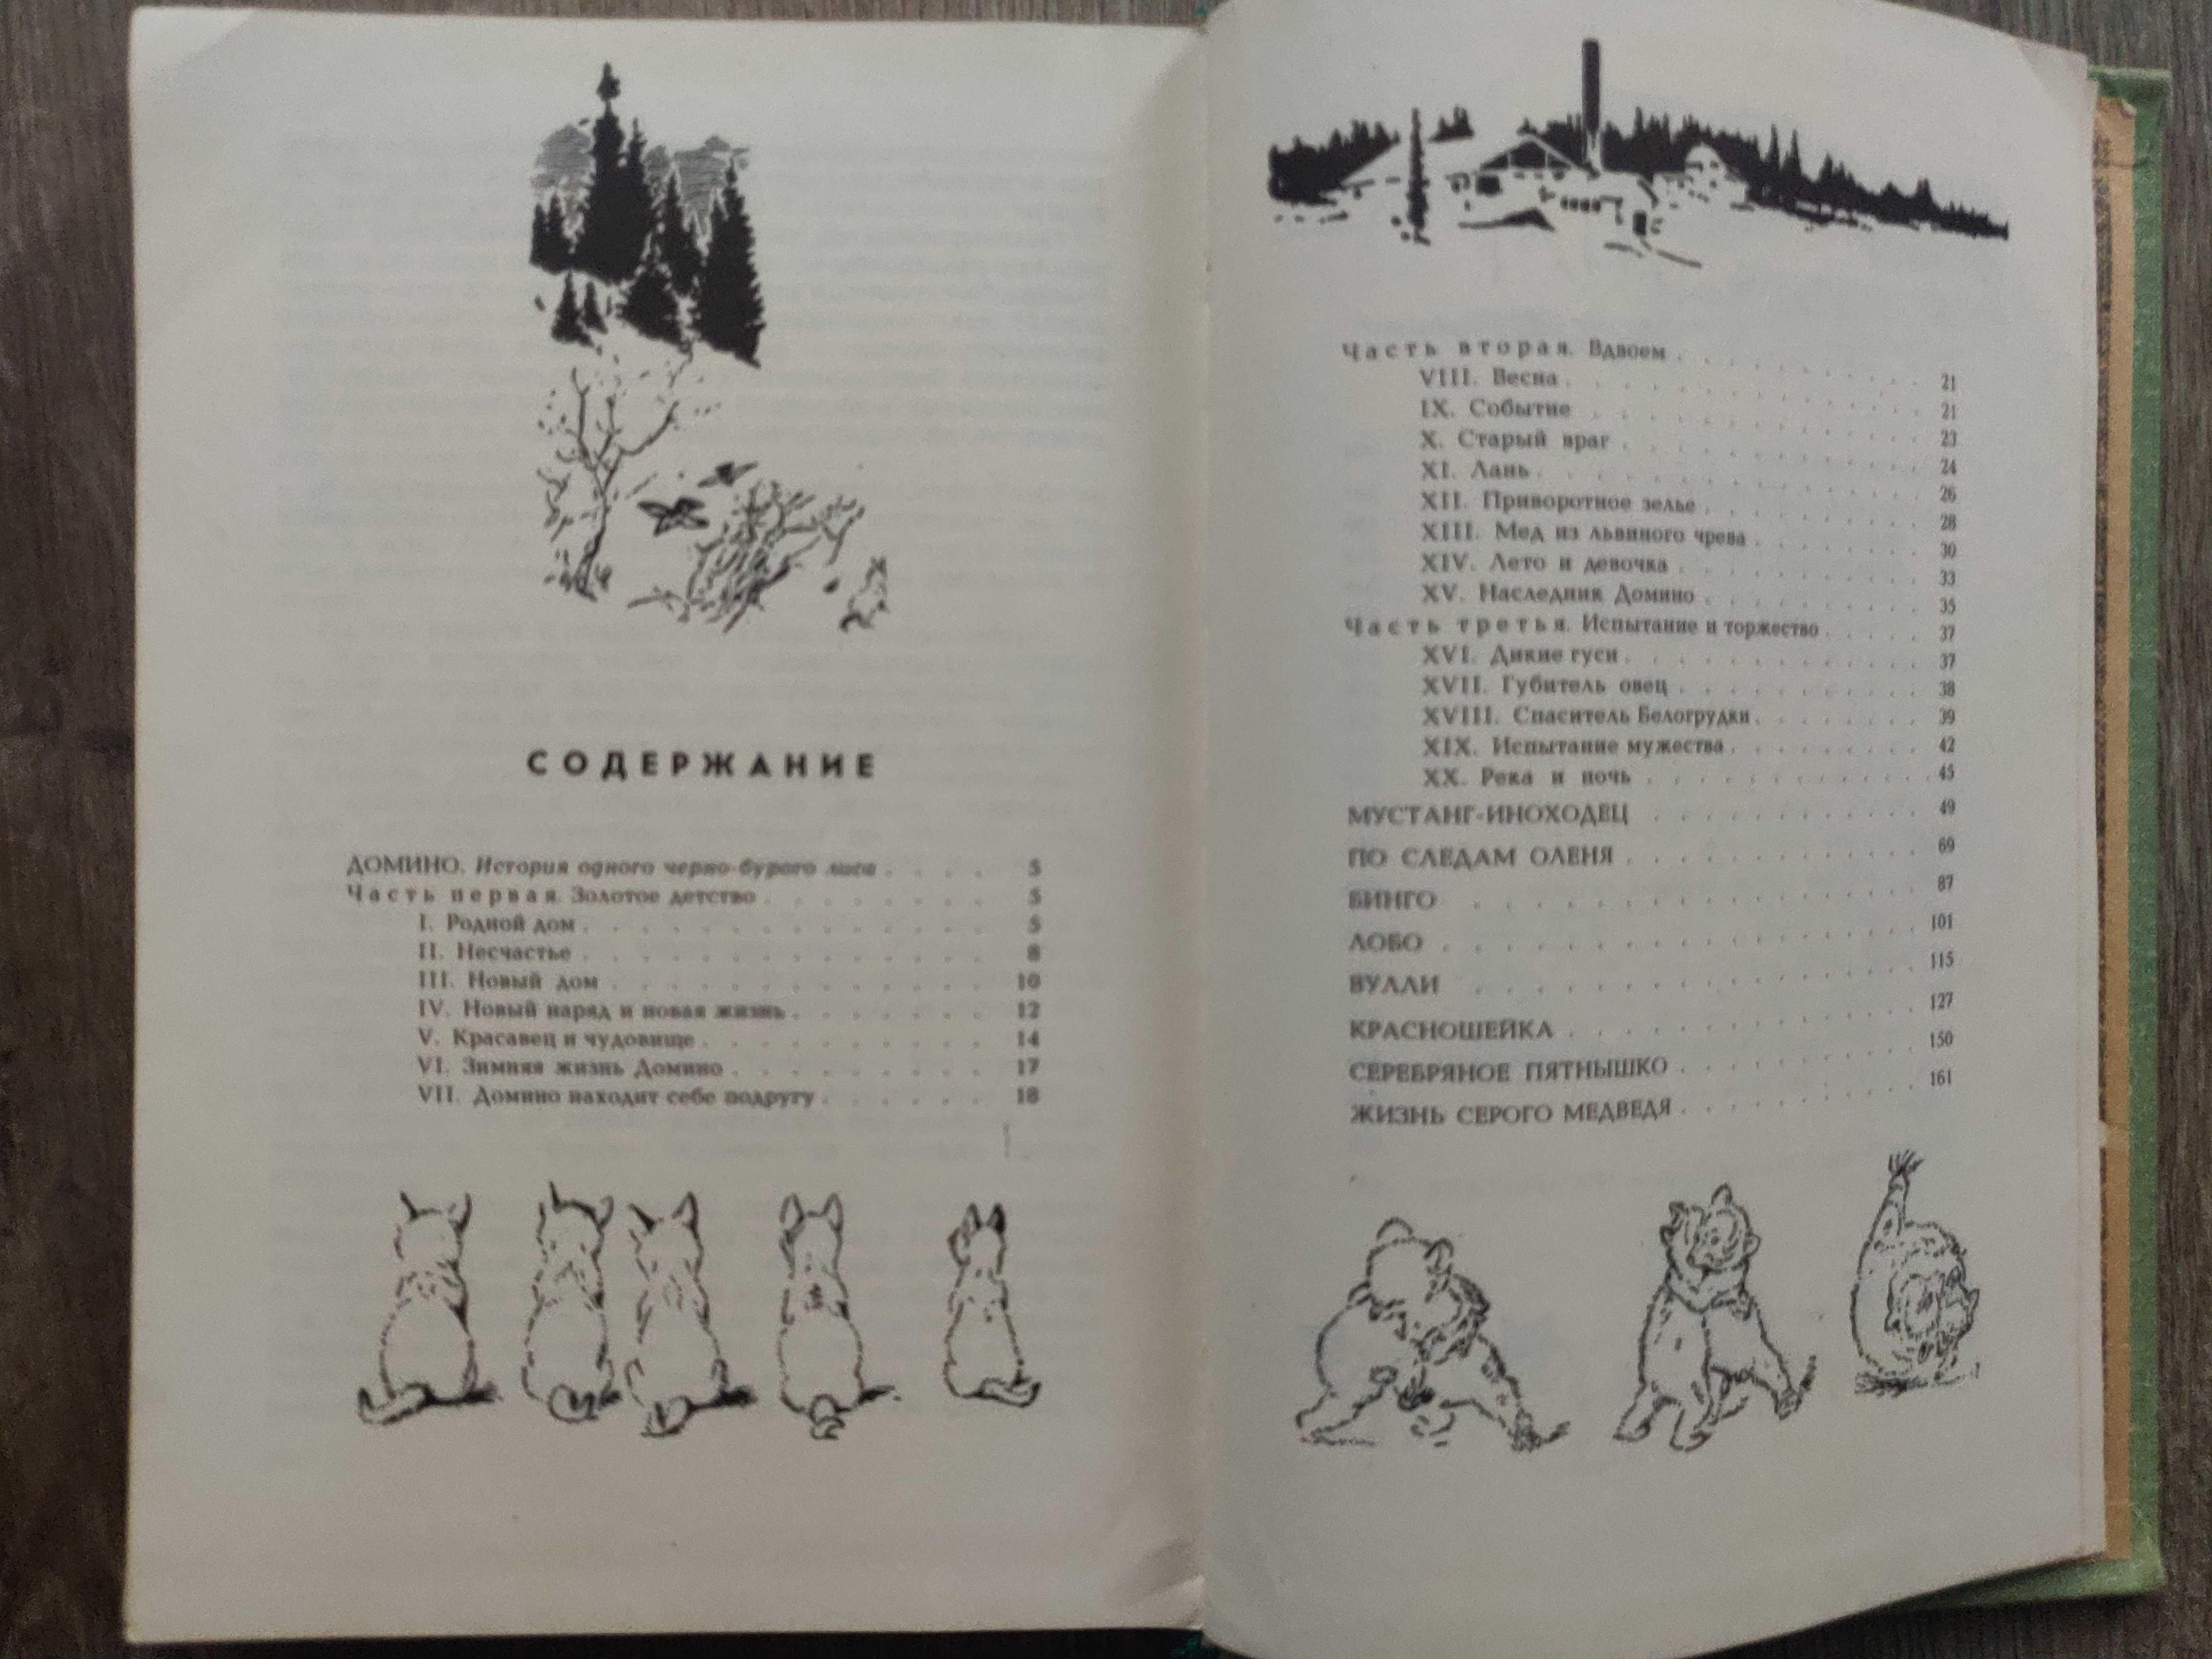 Э. Сетон-Томпсон. Рассказы о животных, 1979 г ретрокнига, с рисунками.